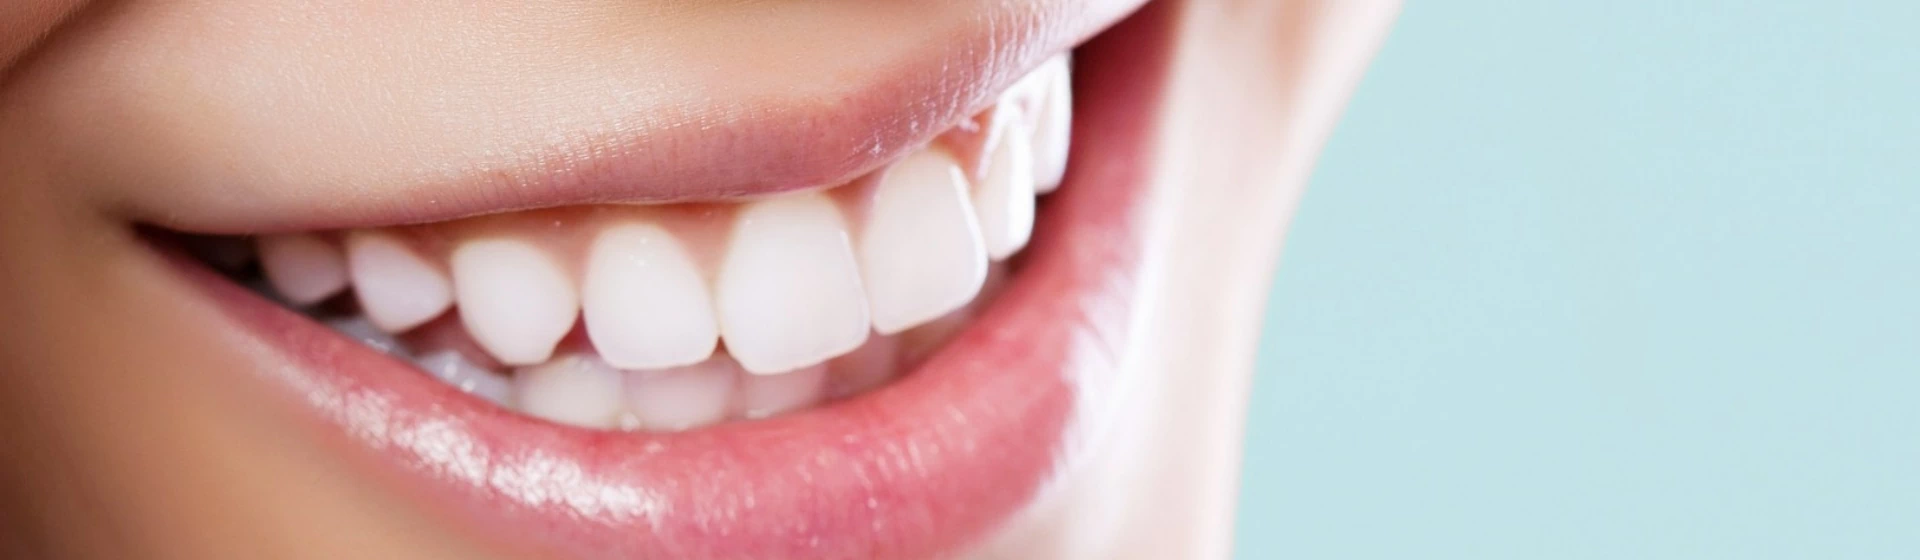 białe zdrowe zęby w uśmiechu